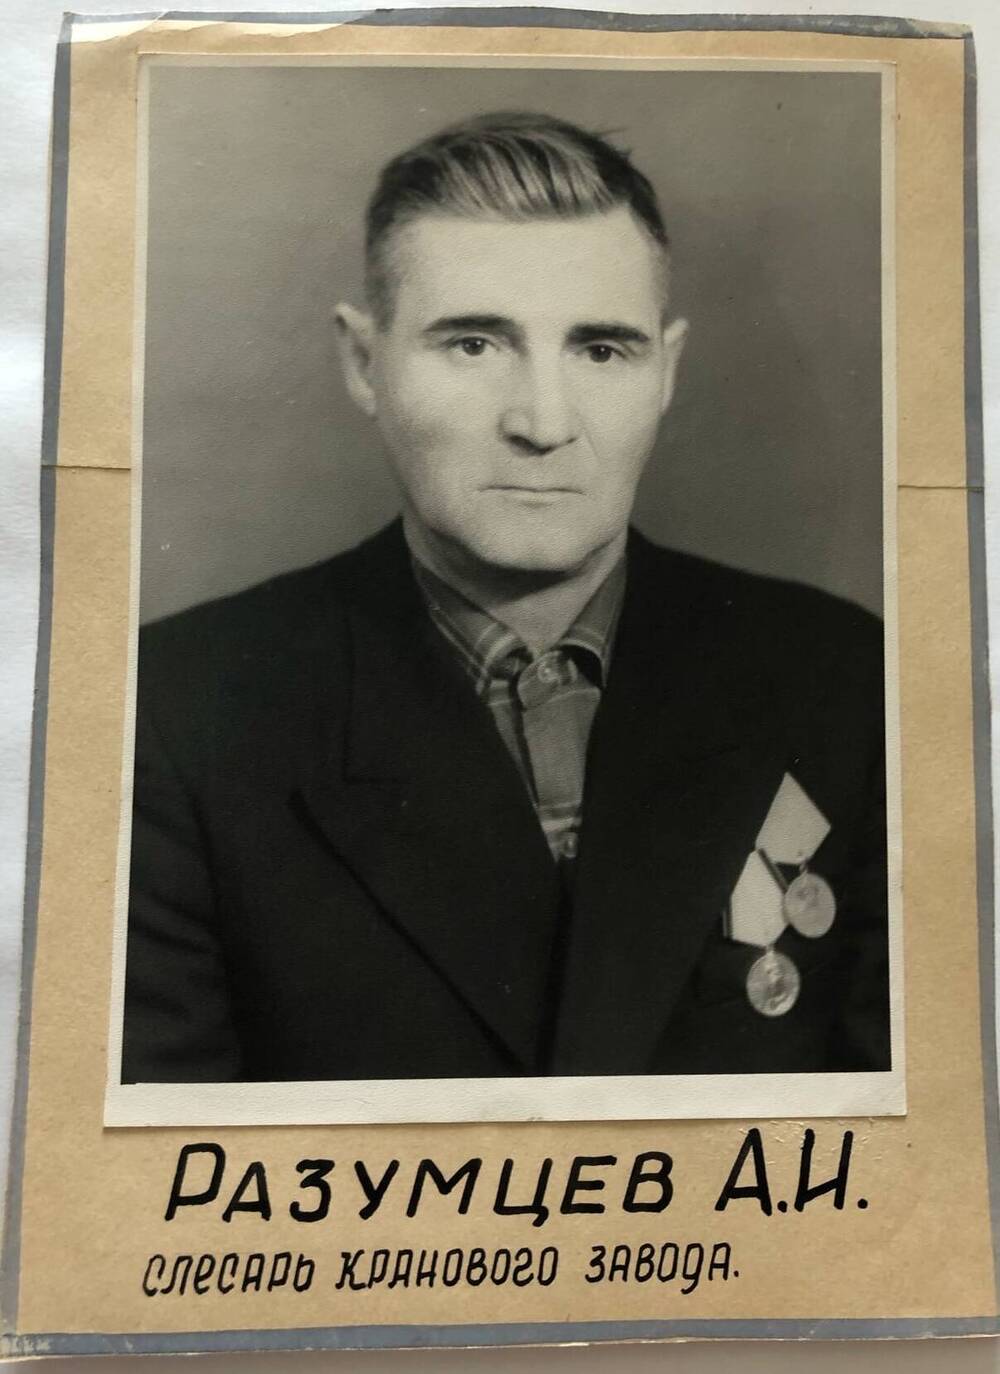 Фотография Разумцева А.И., камышанина, участника Великой Отечественной войны 1941-1945 гг., защитника Сталинграда